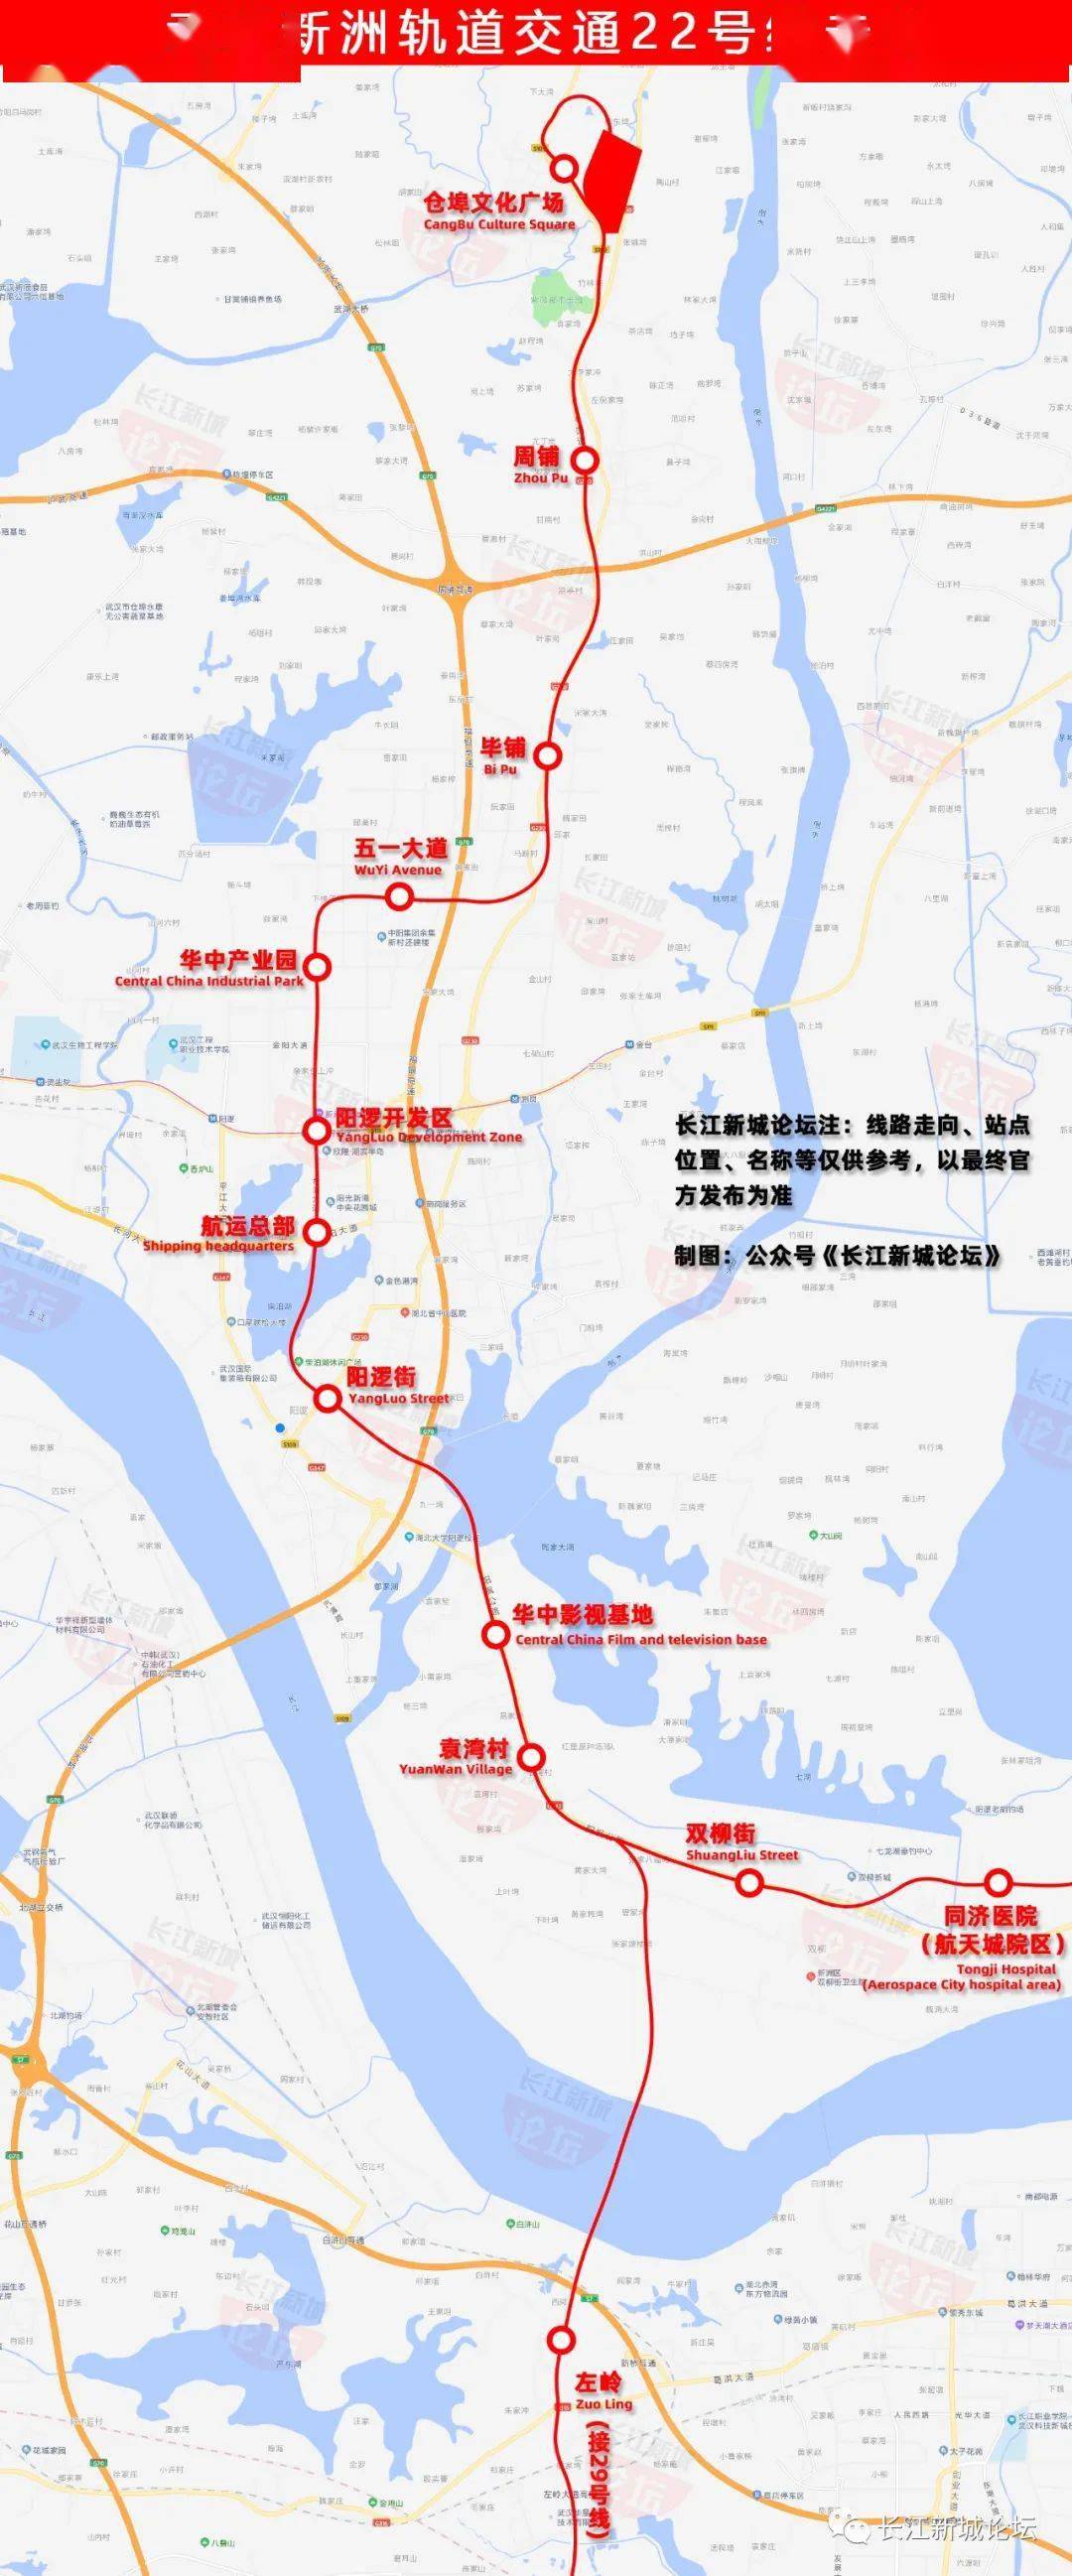 22号线主线部分串联起了新洲仓埠古镇,阳逻新城和武汉双柳国家航天